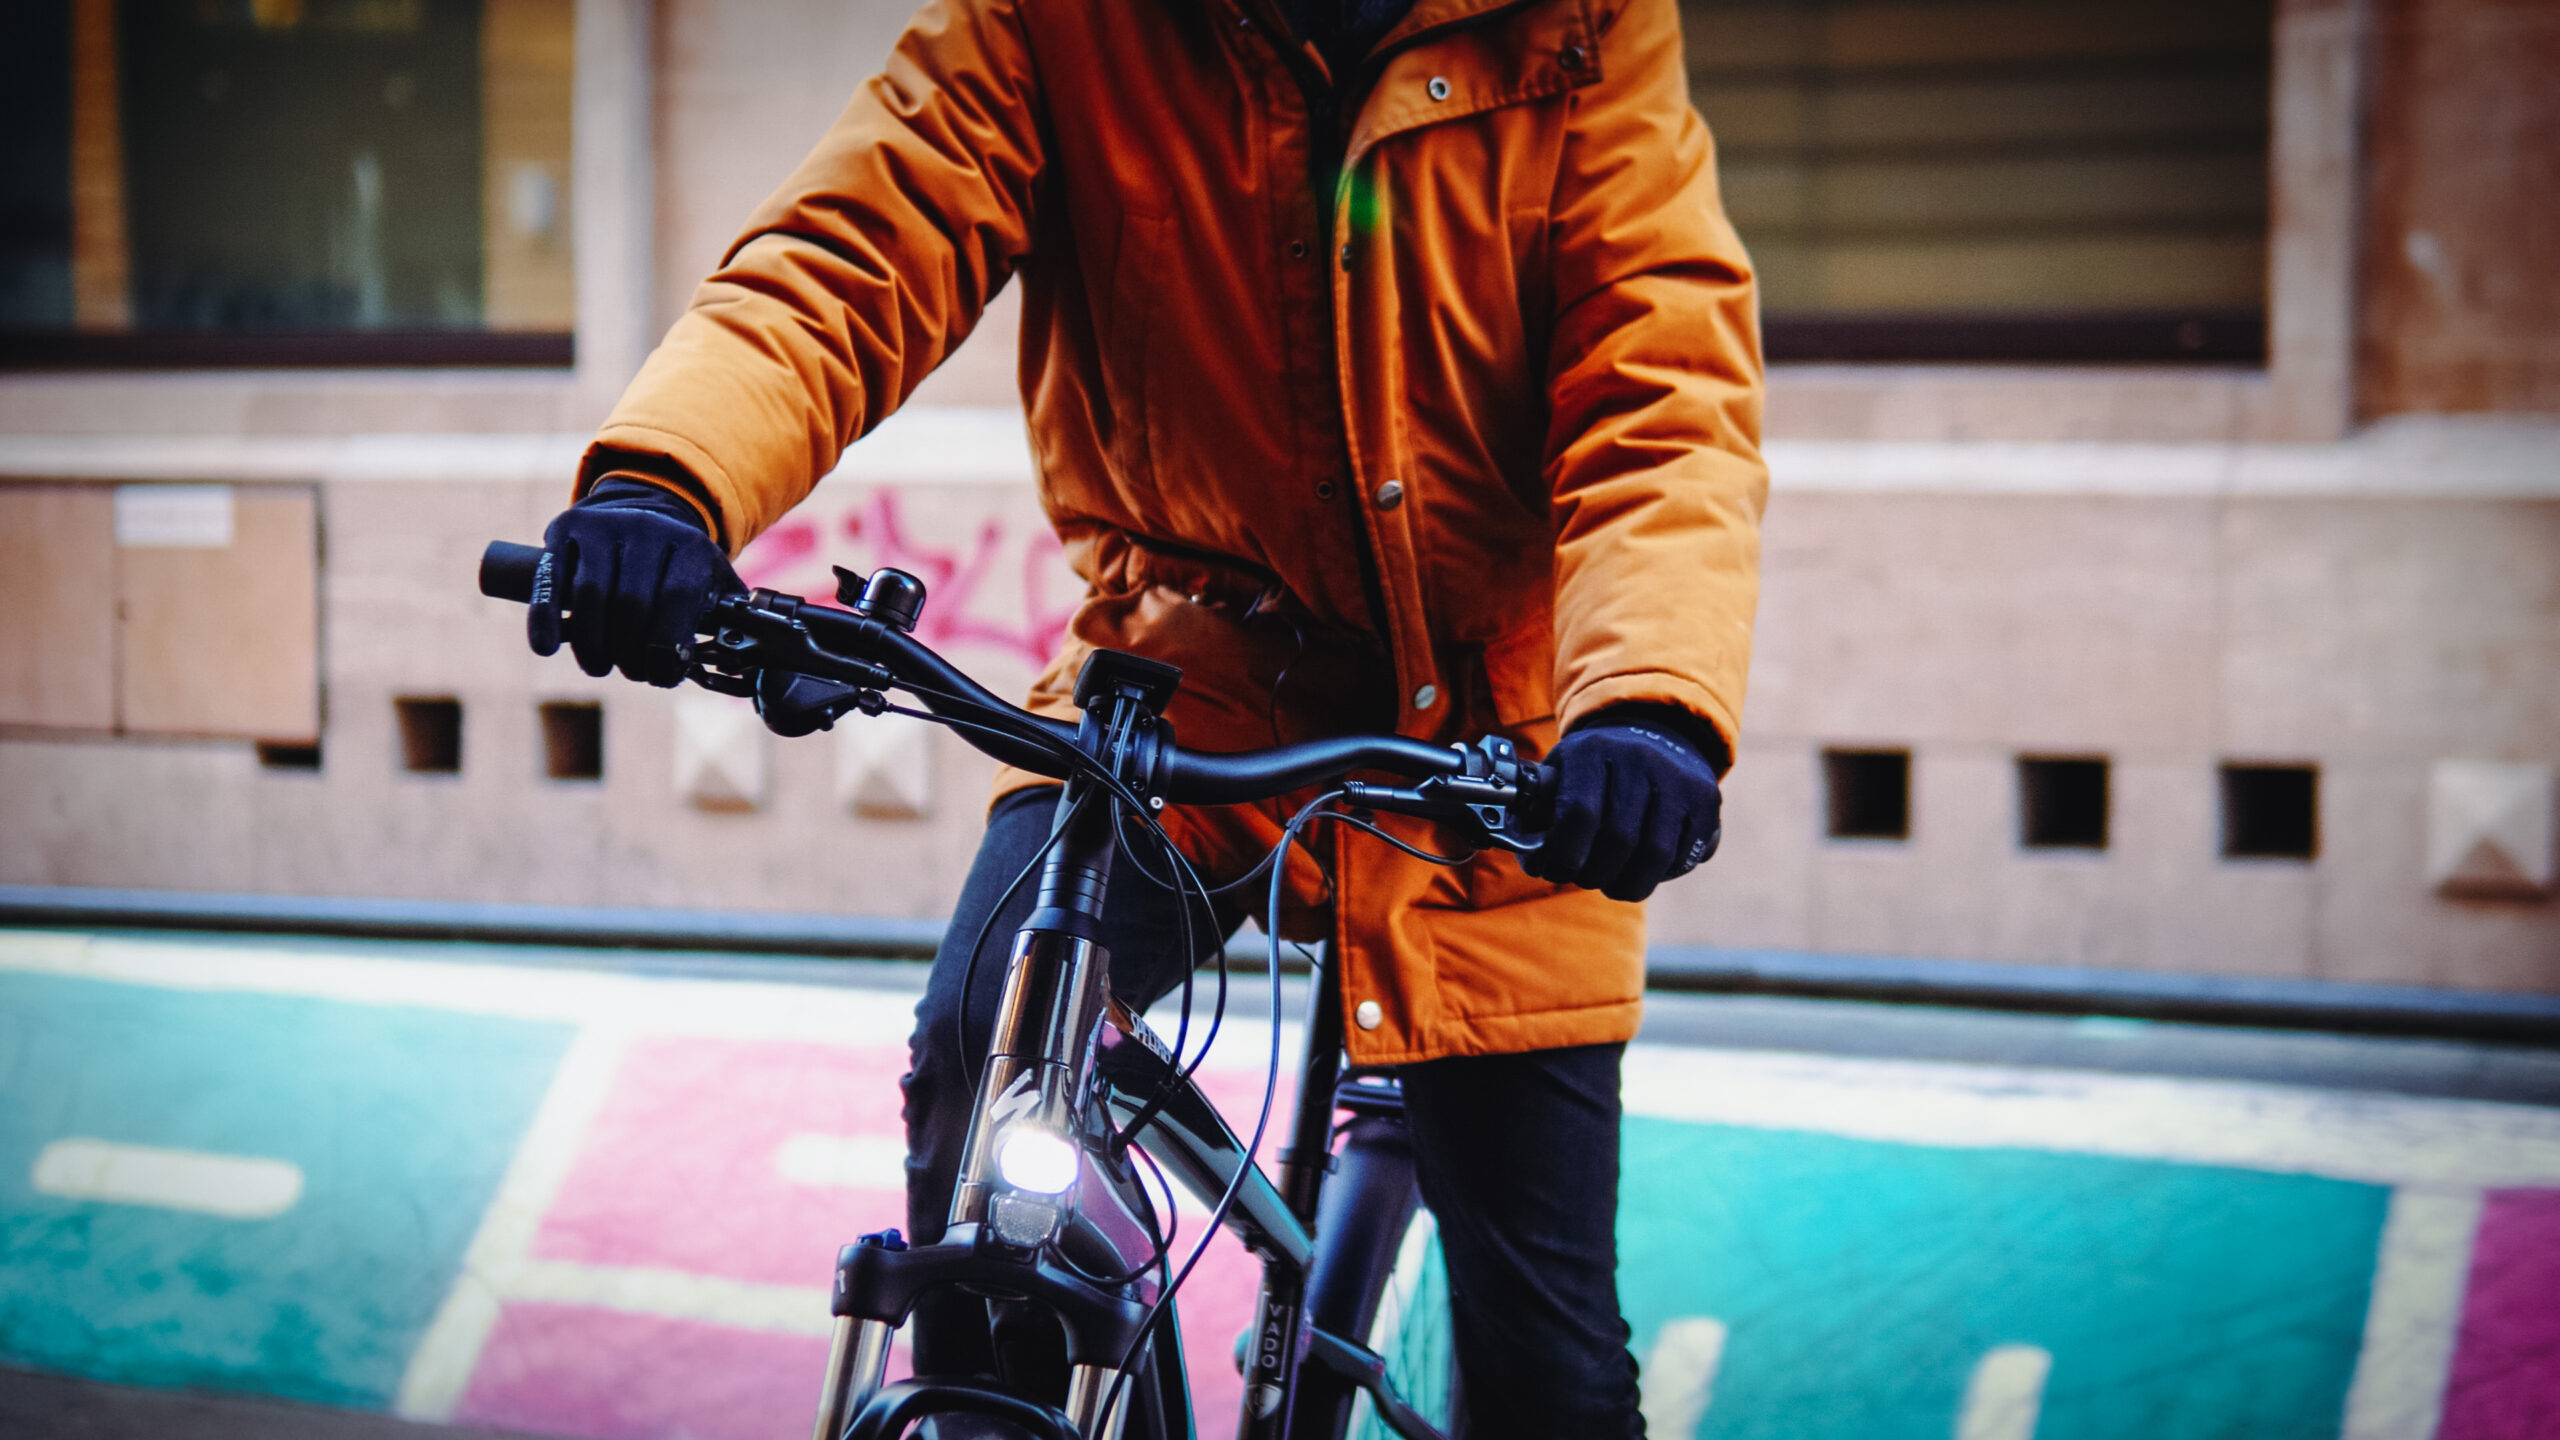 Casque vélo urbain : nos astuces pour bien le choisir